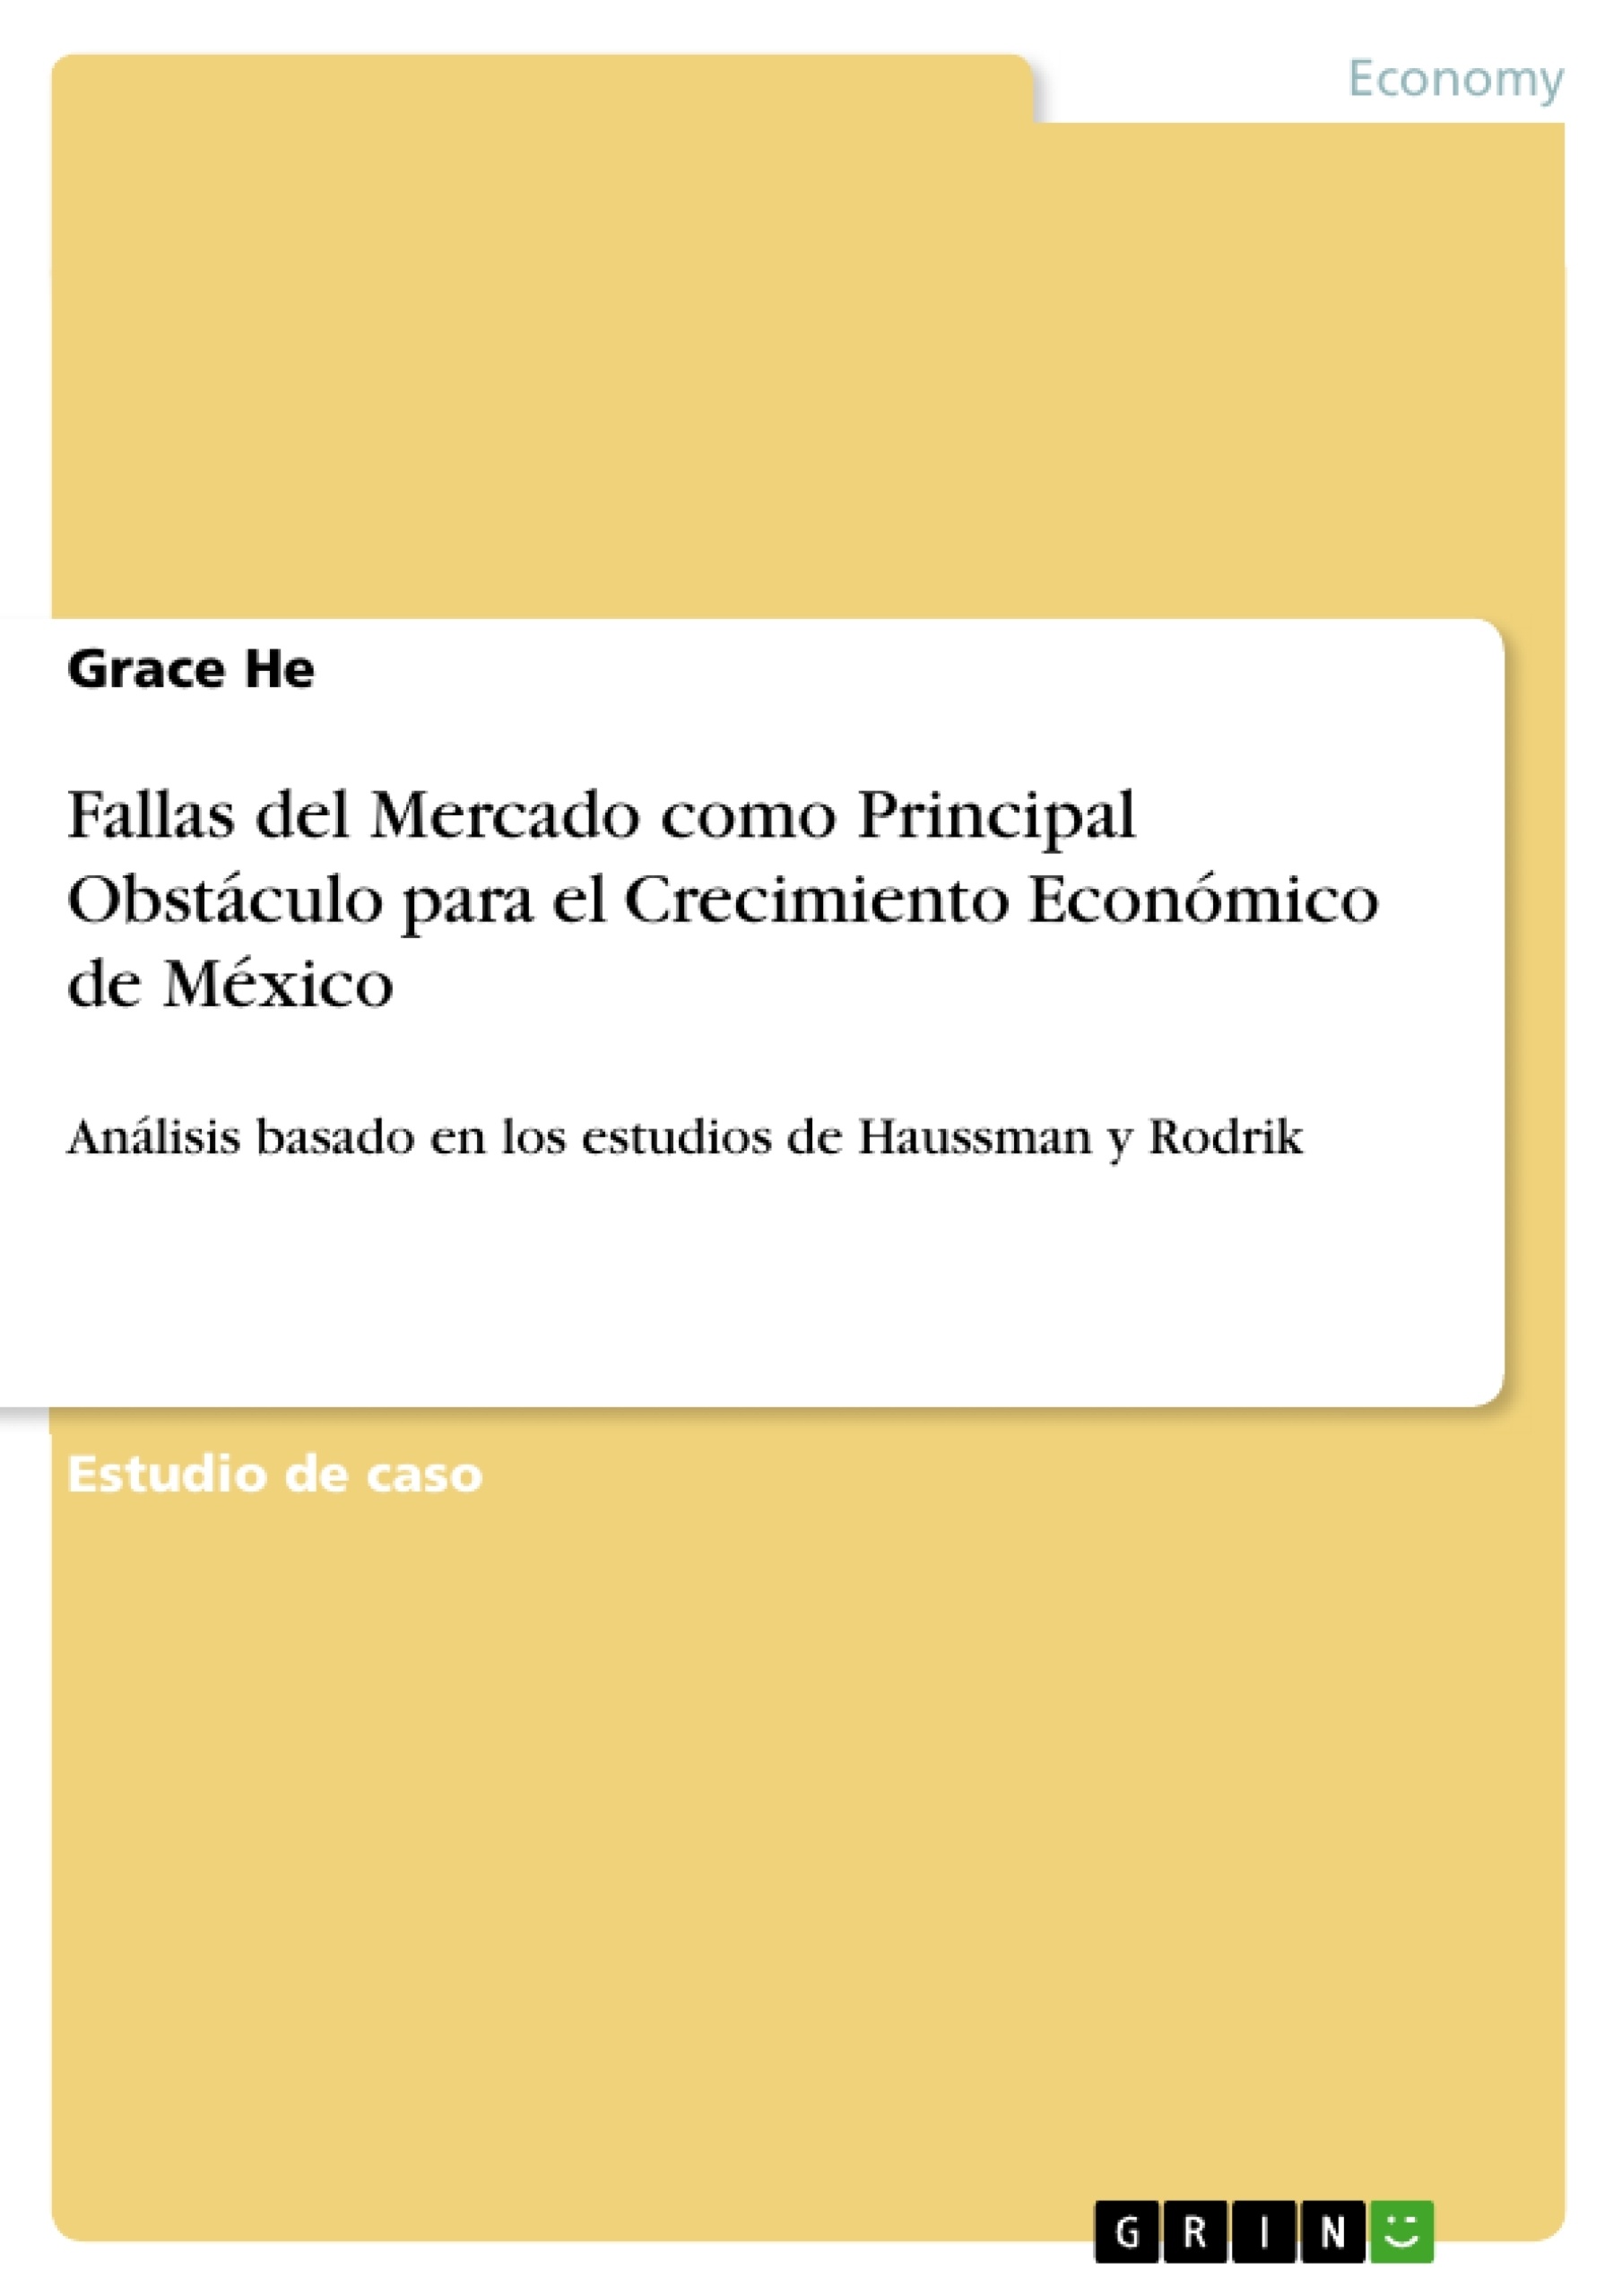 Título: Fallas del Mercado como Principal Obstáculo para el Crecimiento Económico de México